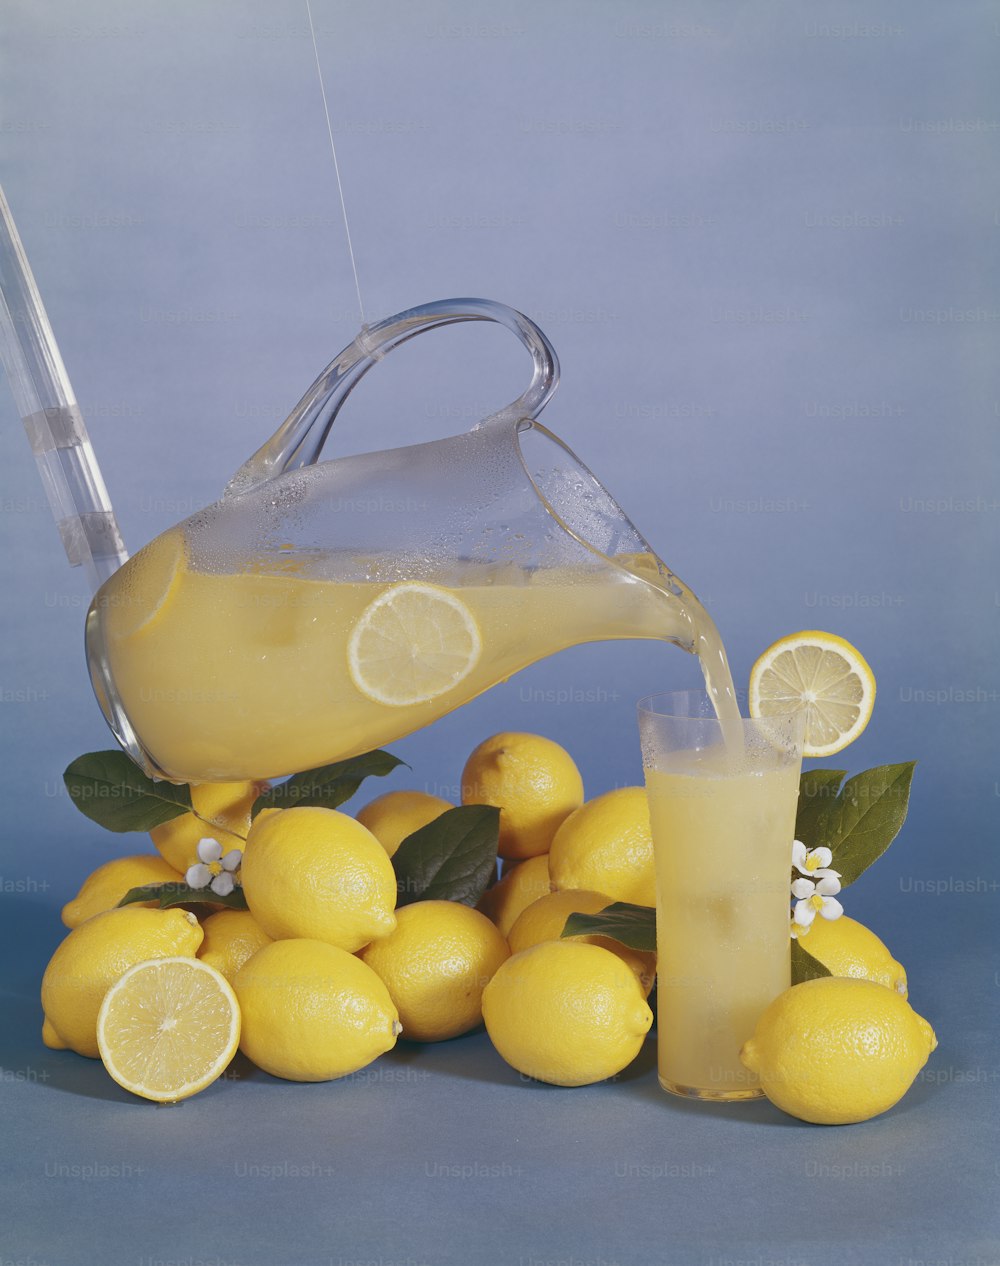 Una jarra de limonada que se vierte sobre una pila de limones